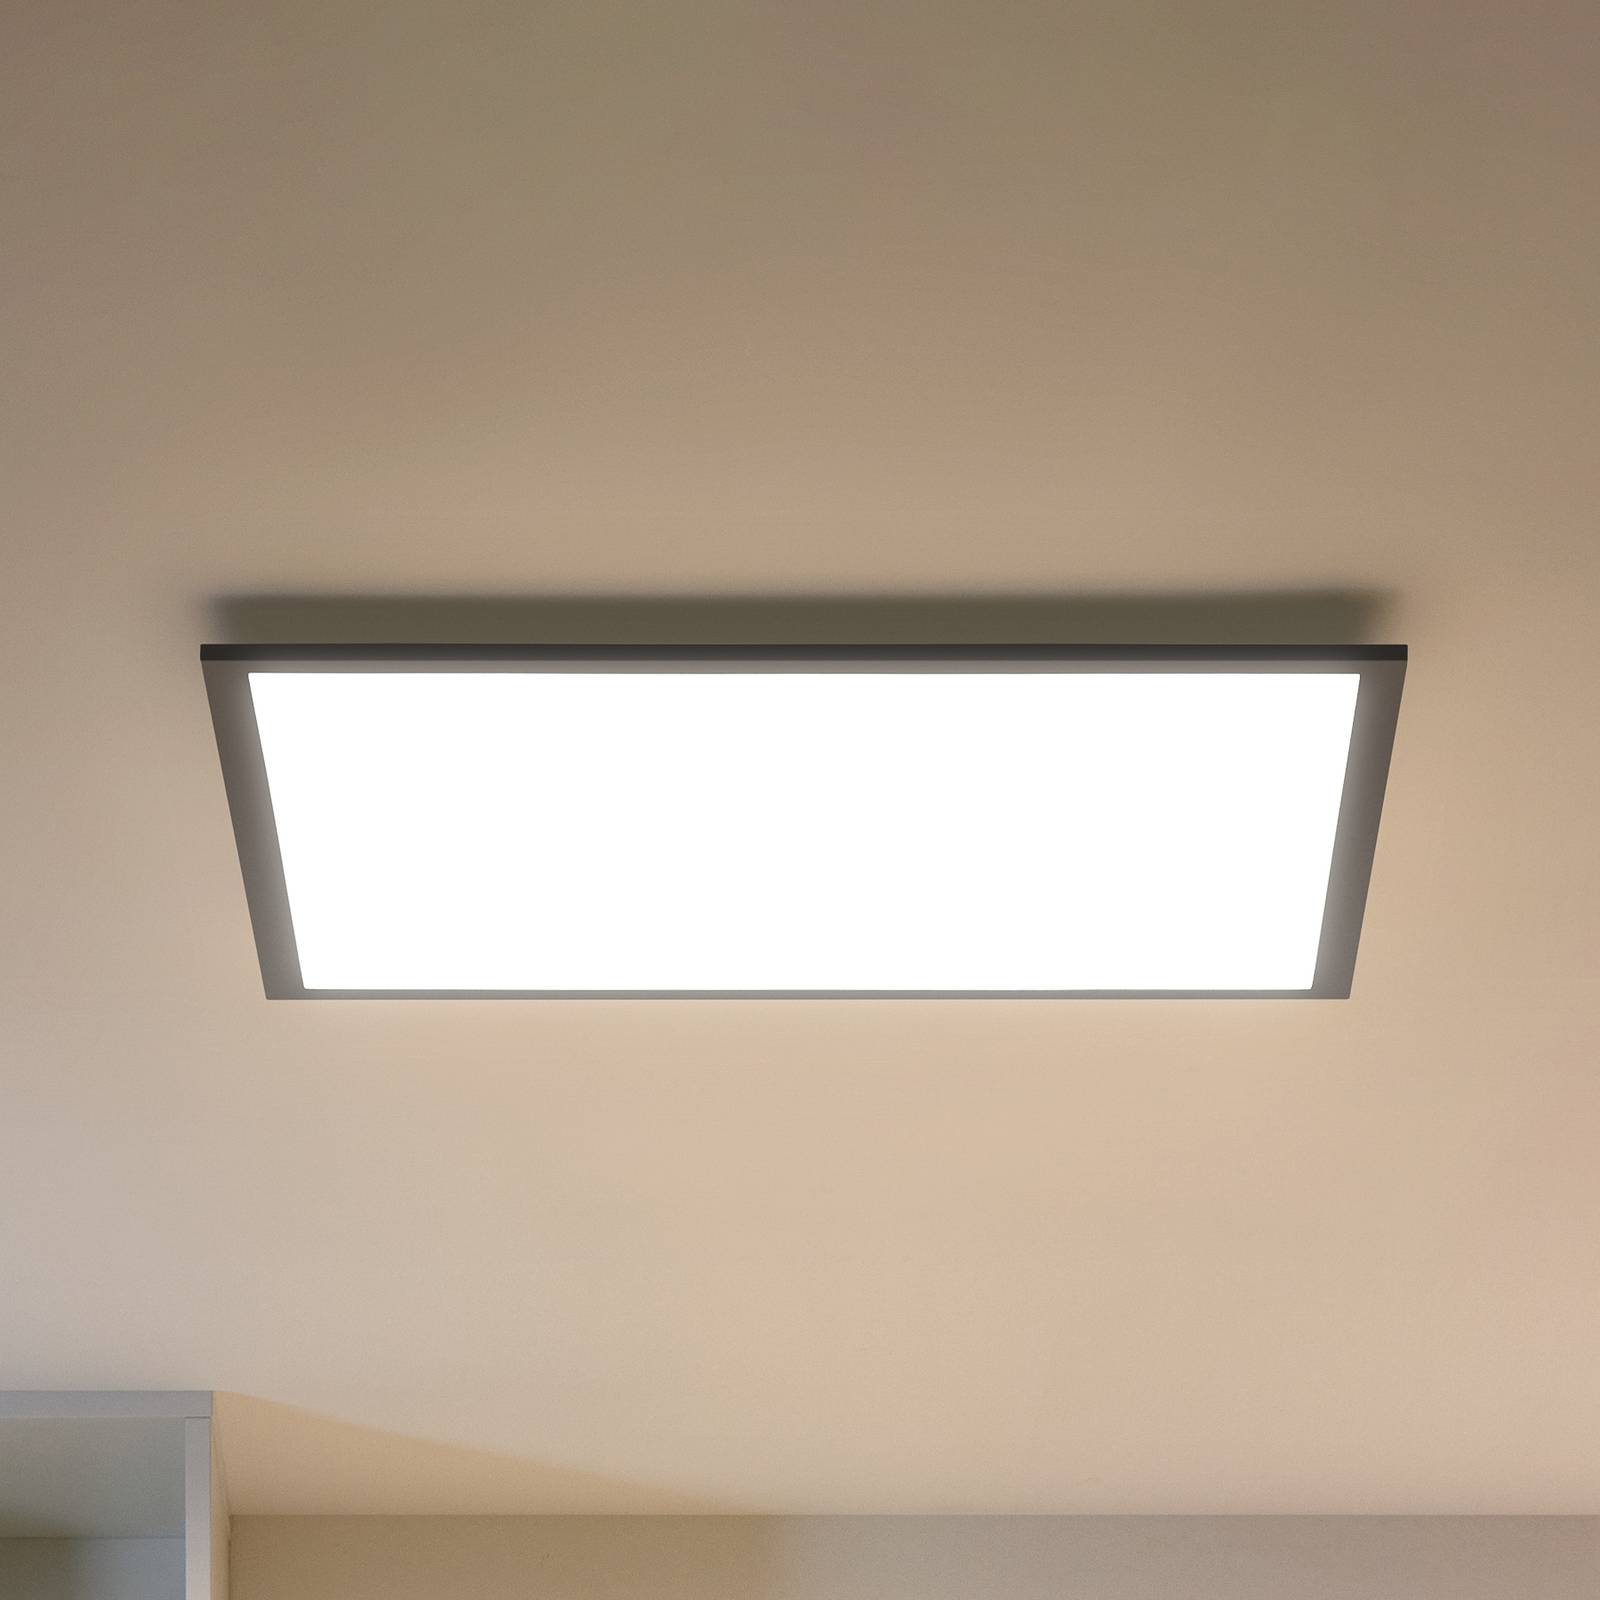 Image of WiZ plafonnier LED panneau, noir, 60x60 cm 8719514554870